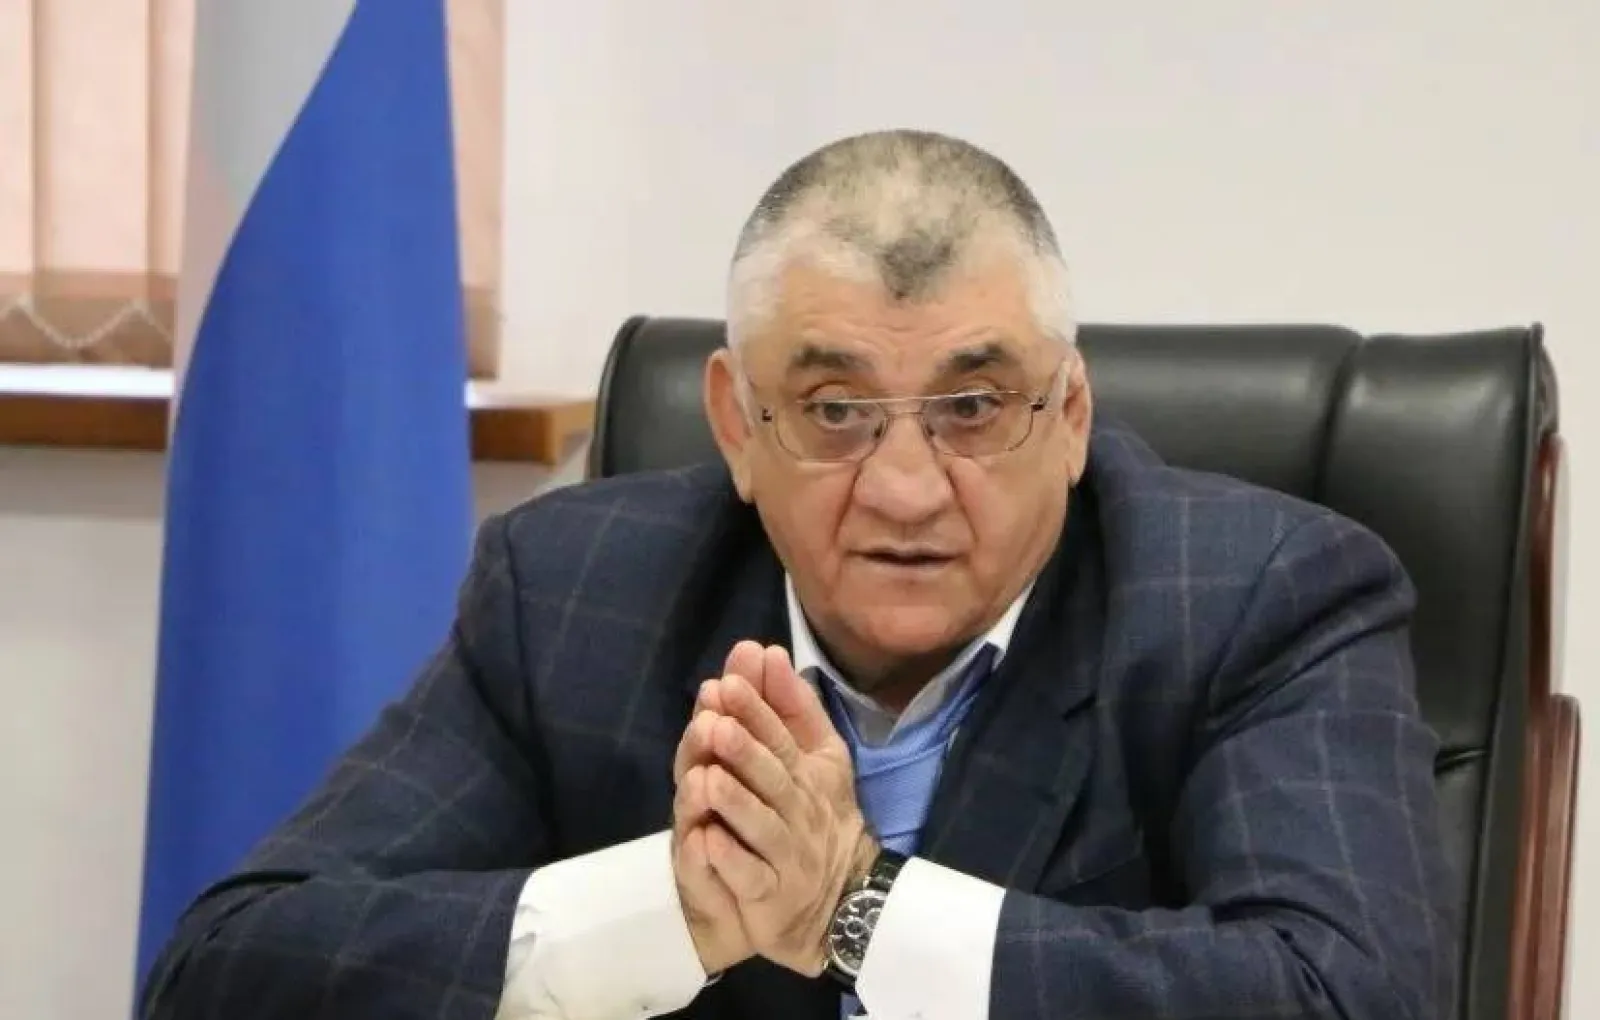 Baza: бывший министр спорта Дагестана Магомедов совершил попытку суицида в СИЗО